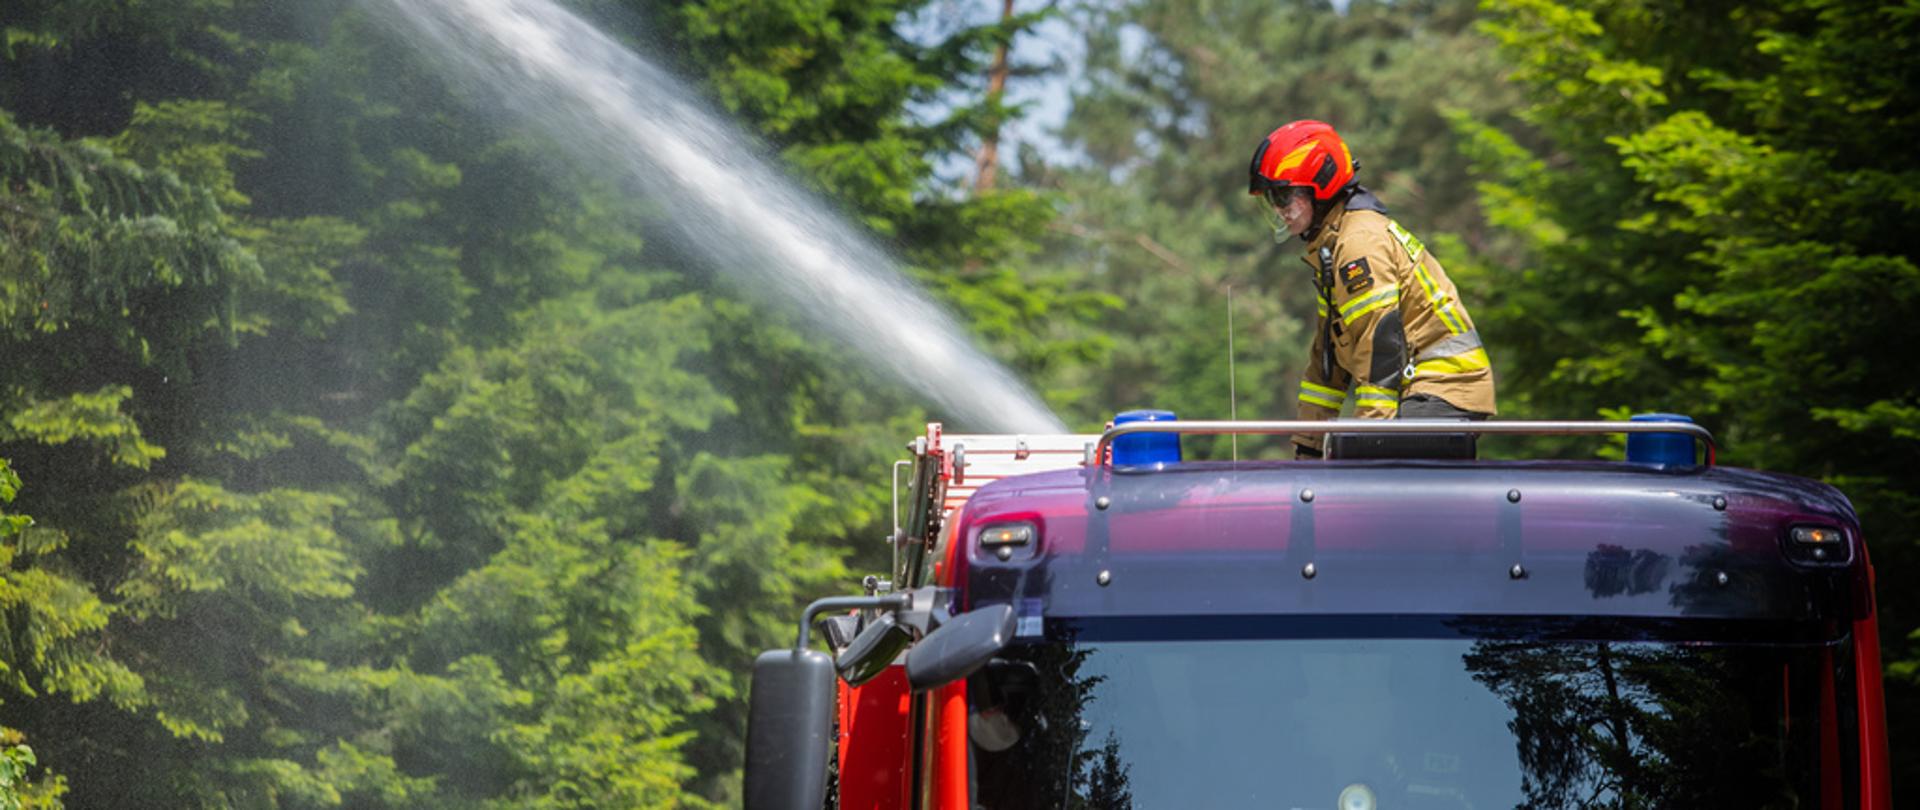 Na zdjęciu widoczny strażak w ubraniu specjalnym piaskowym w czerwonym hełmie podający wodę z działka z dachu czerwonego samochodu pożarniczego na drzewa w lesie. Za strażakiem widoczna ścian lasu z drzew iglastych.